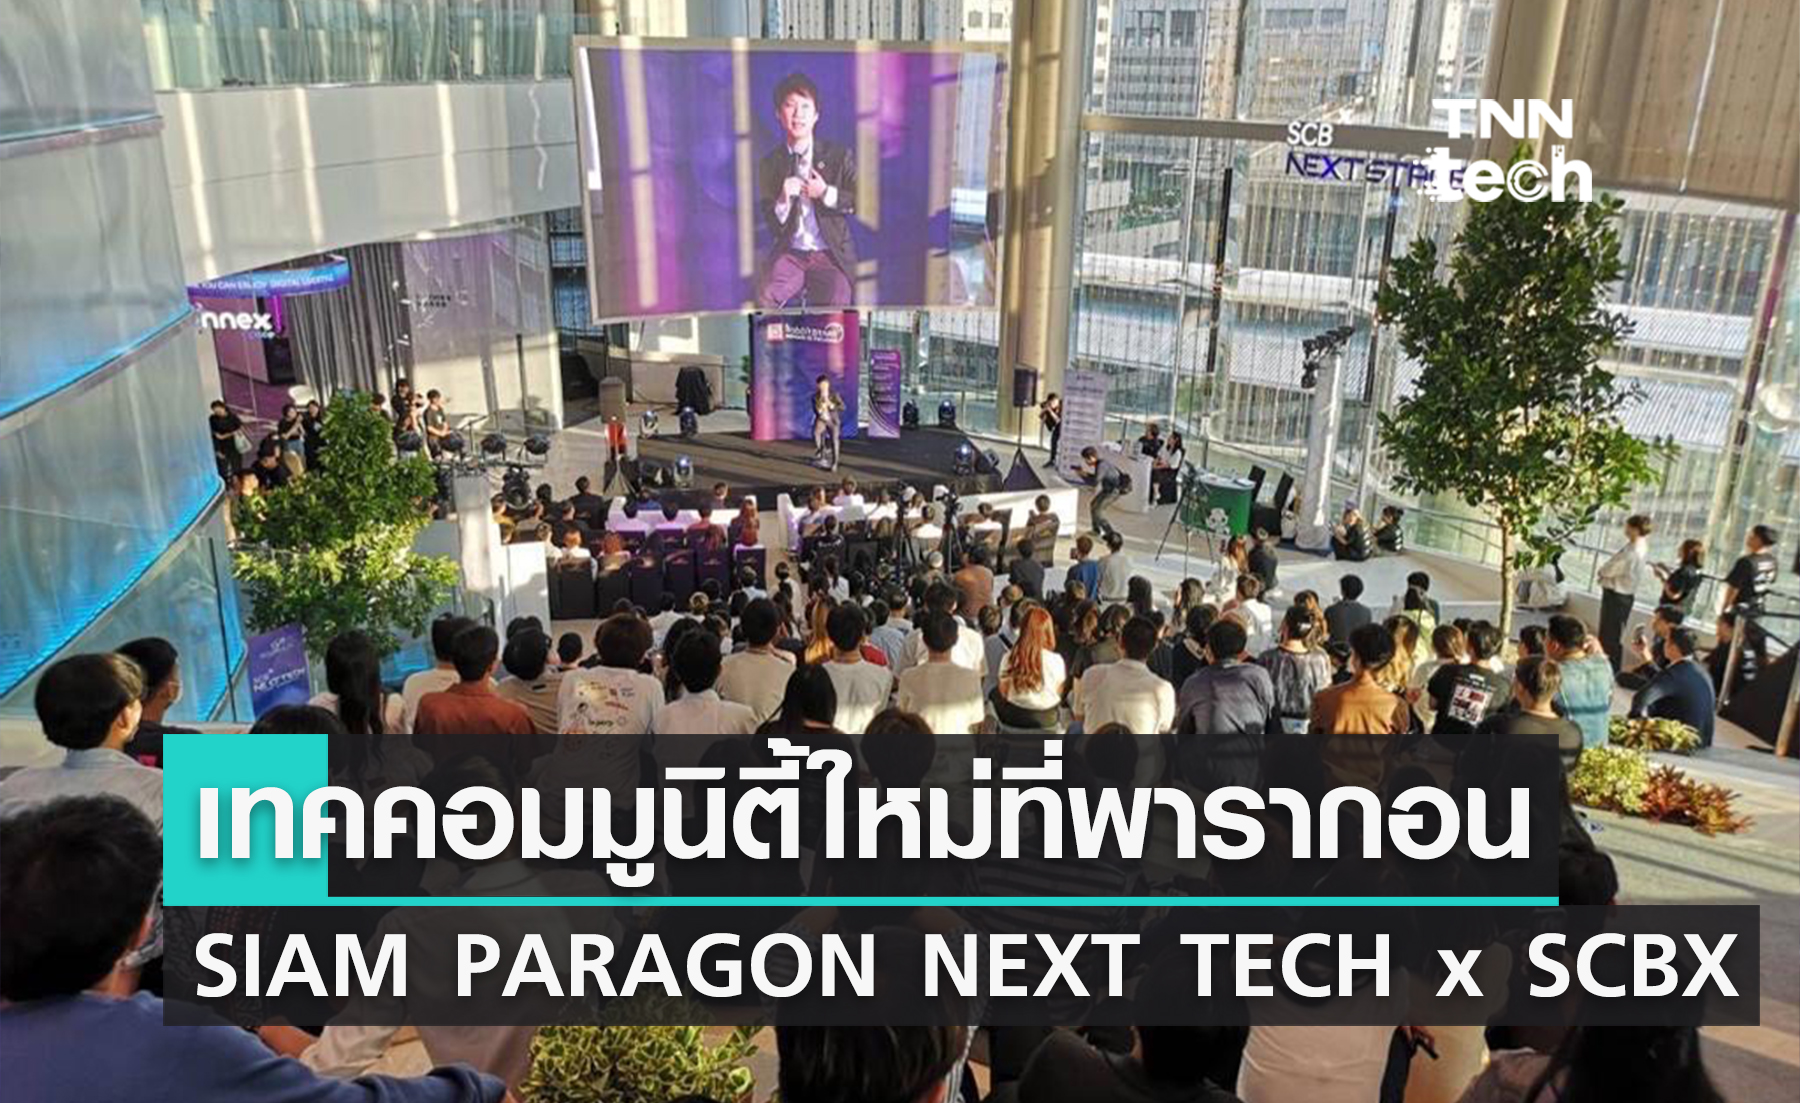 พารากอน เปิดตัวเทคคอมมูนิตี้แห่งใหม่ ‘SIAM PARAGON NEXT TECH x SCBX’ 